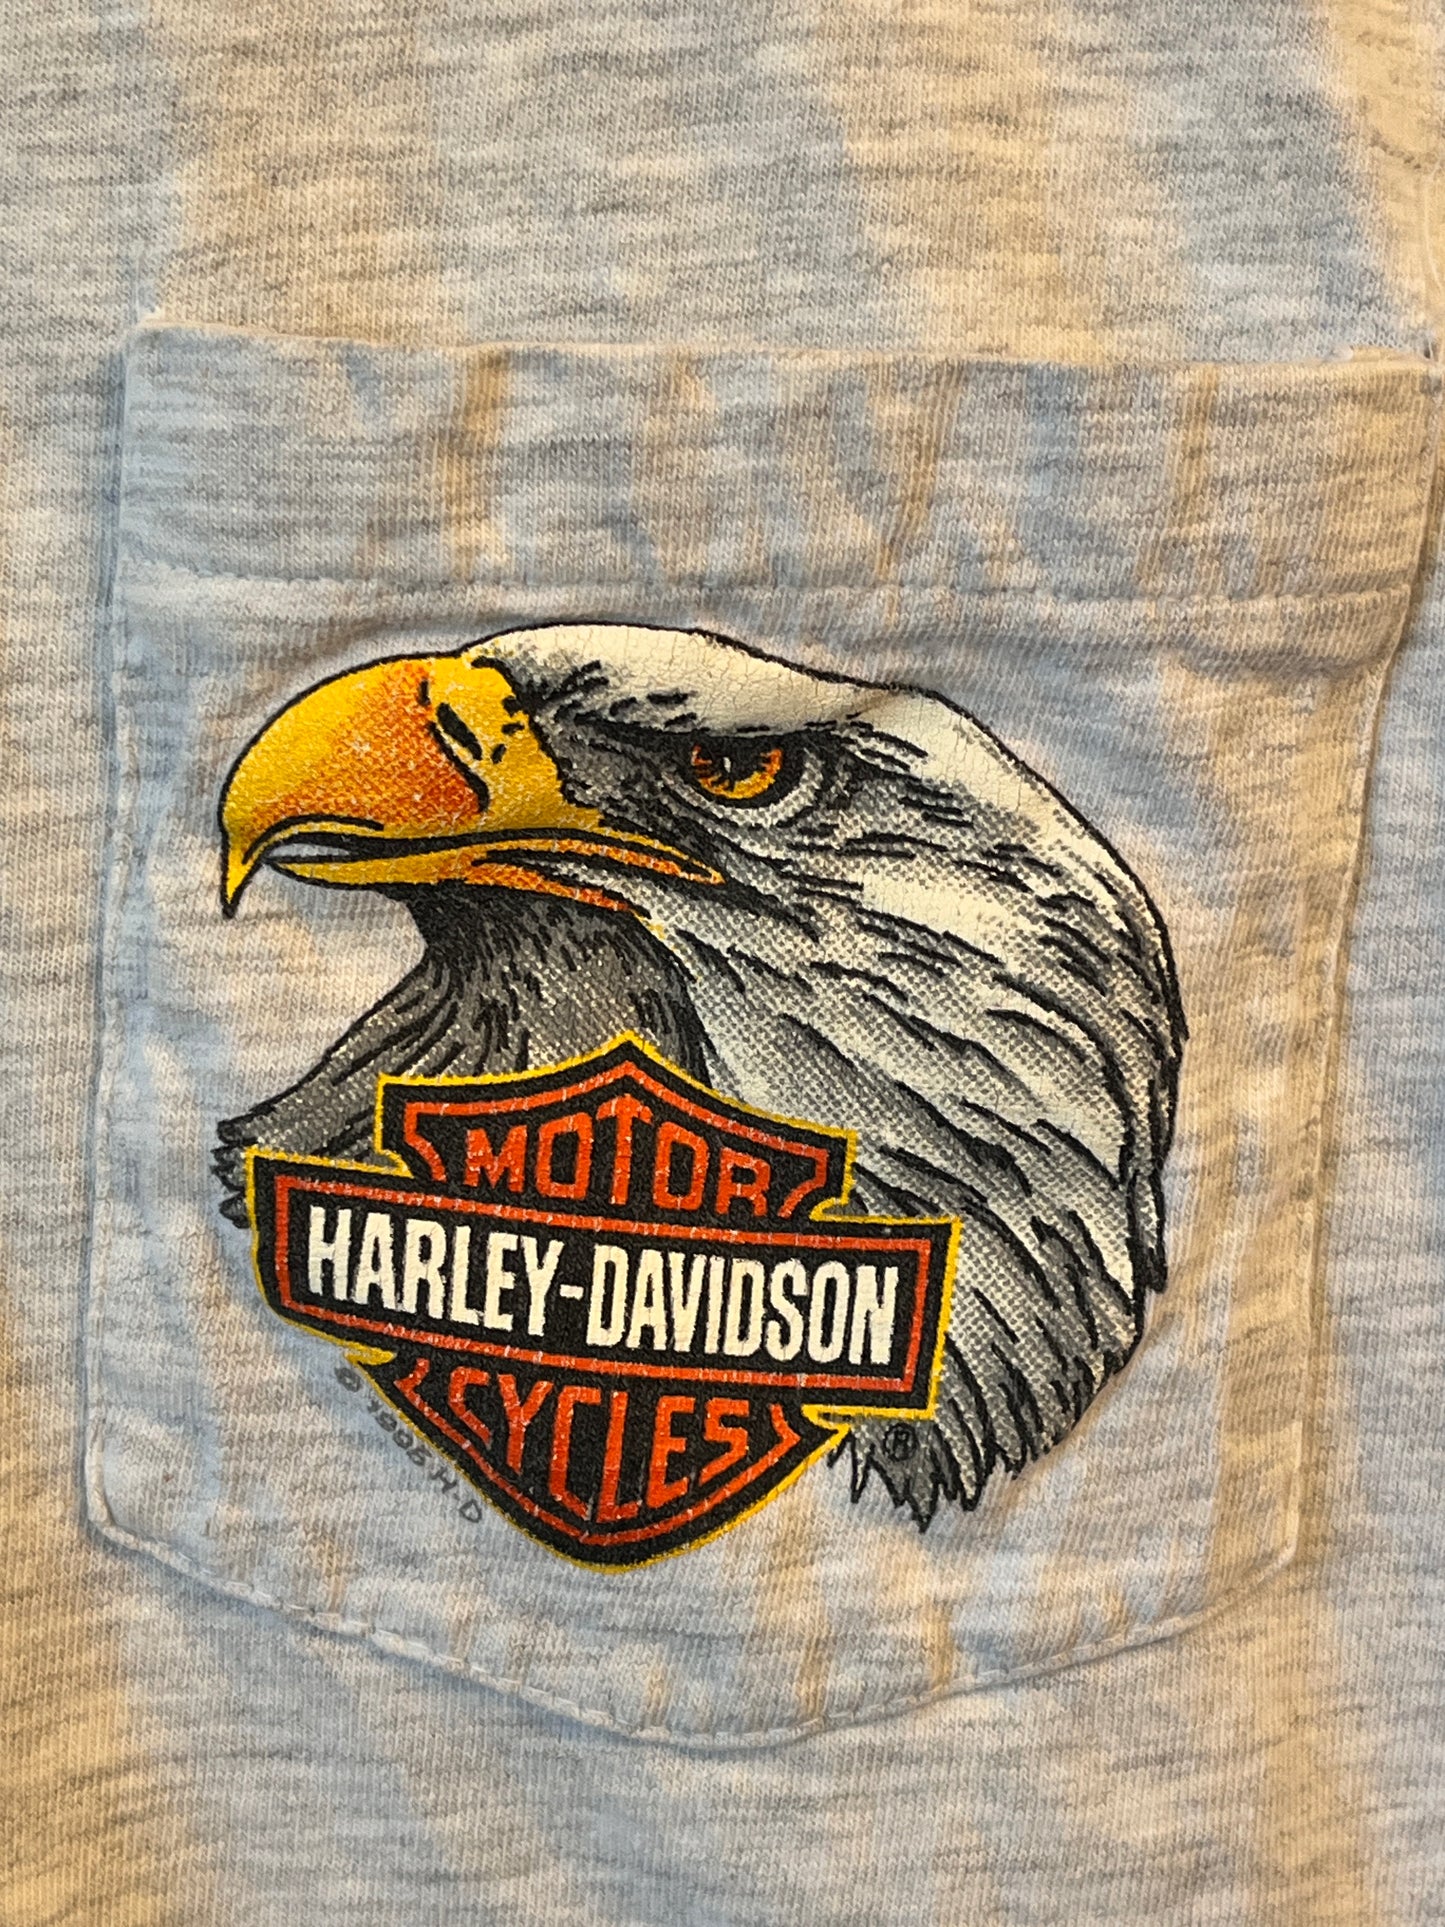 Harley Davidson Eagle breast pocket t with Little Rock hog back graphic '95